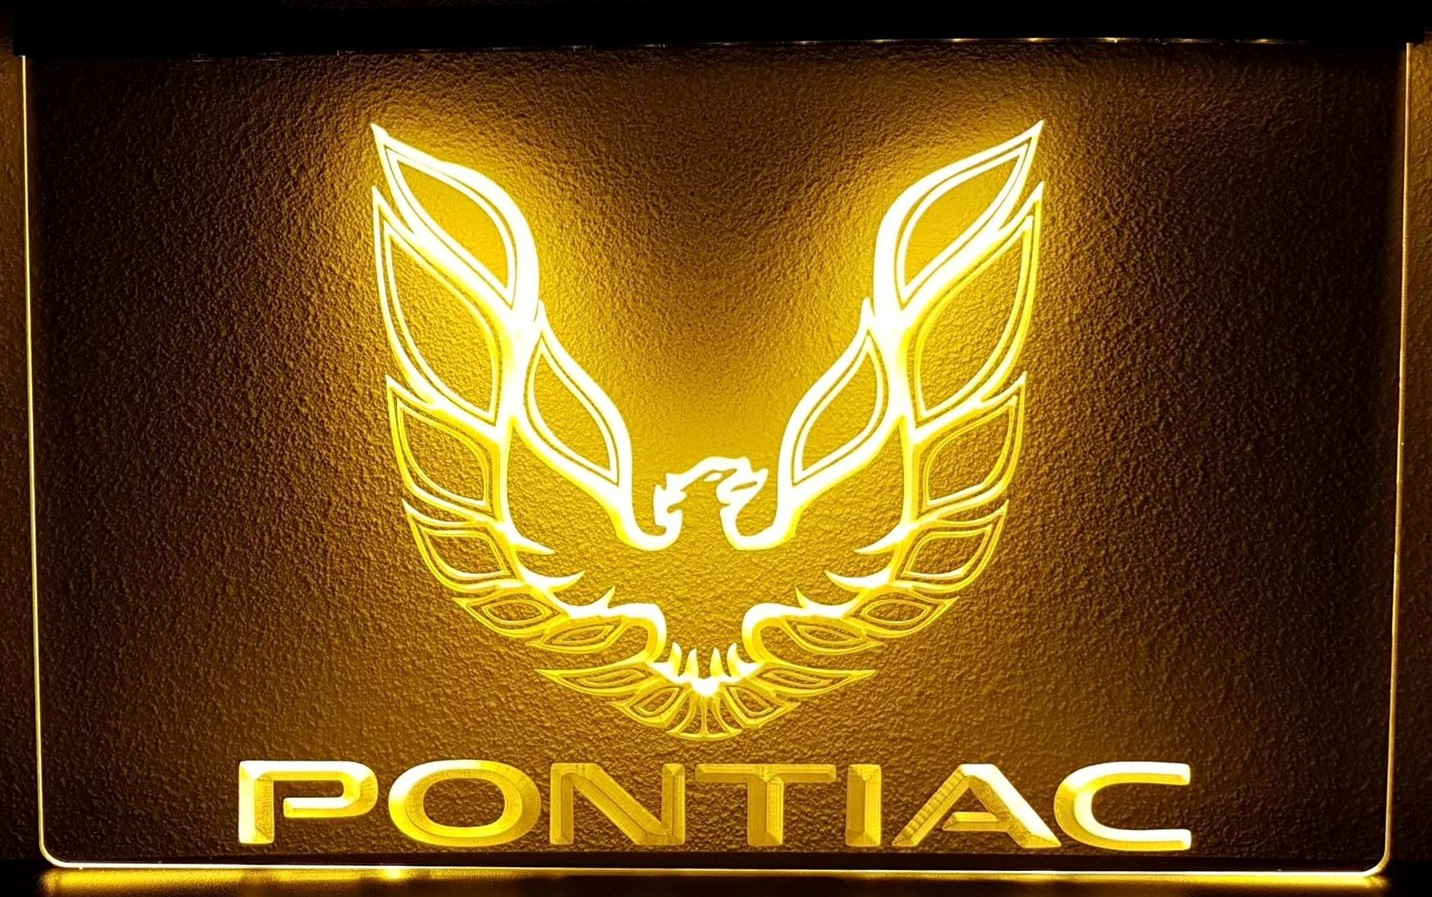 Pontiac firebird symbol